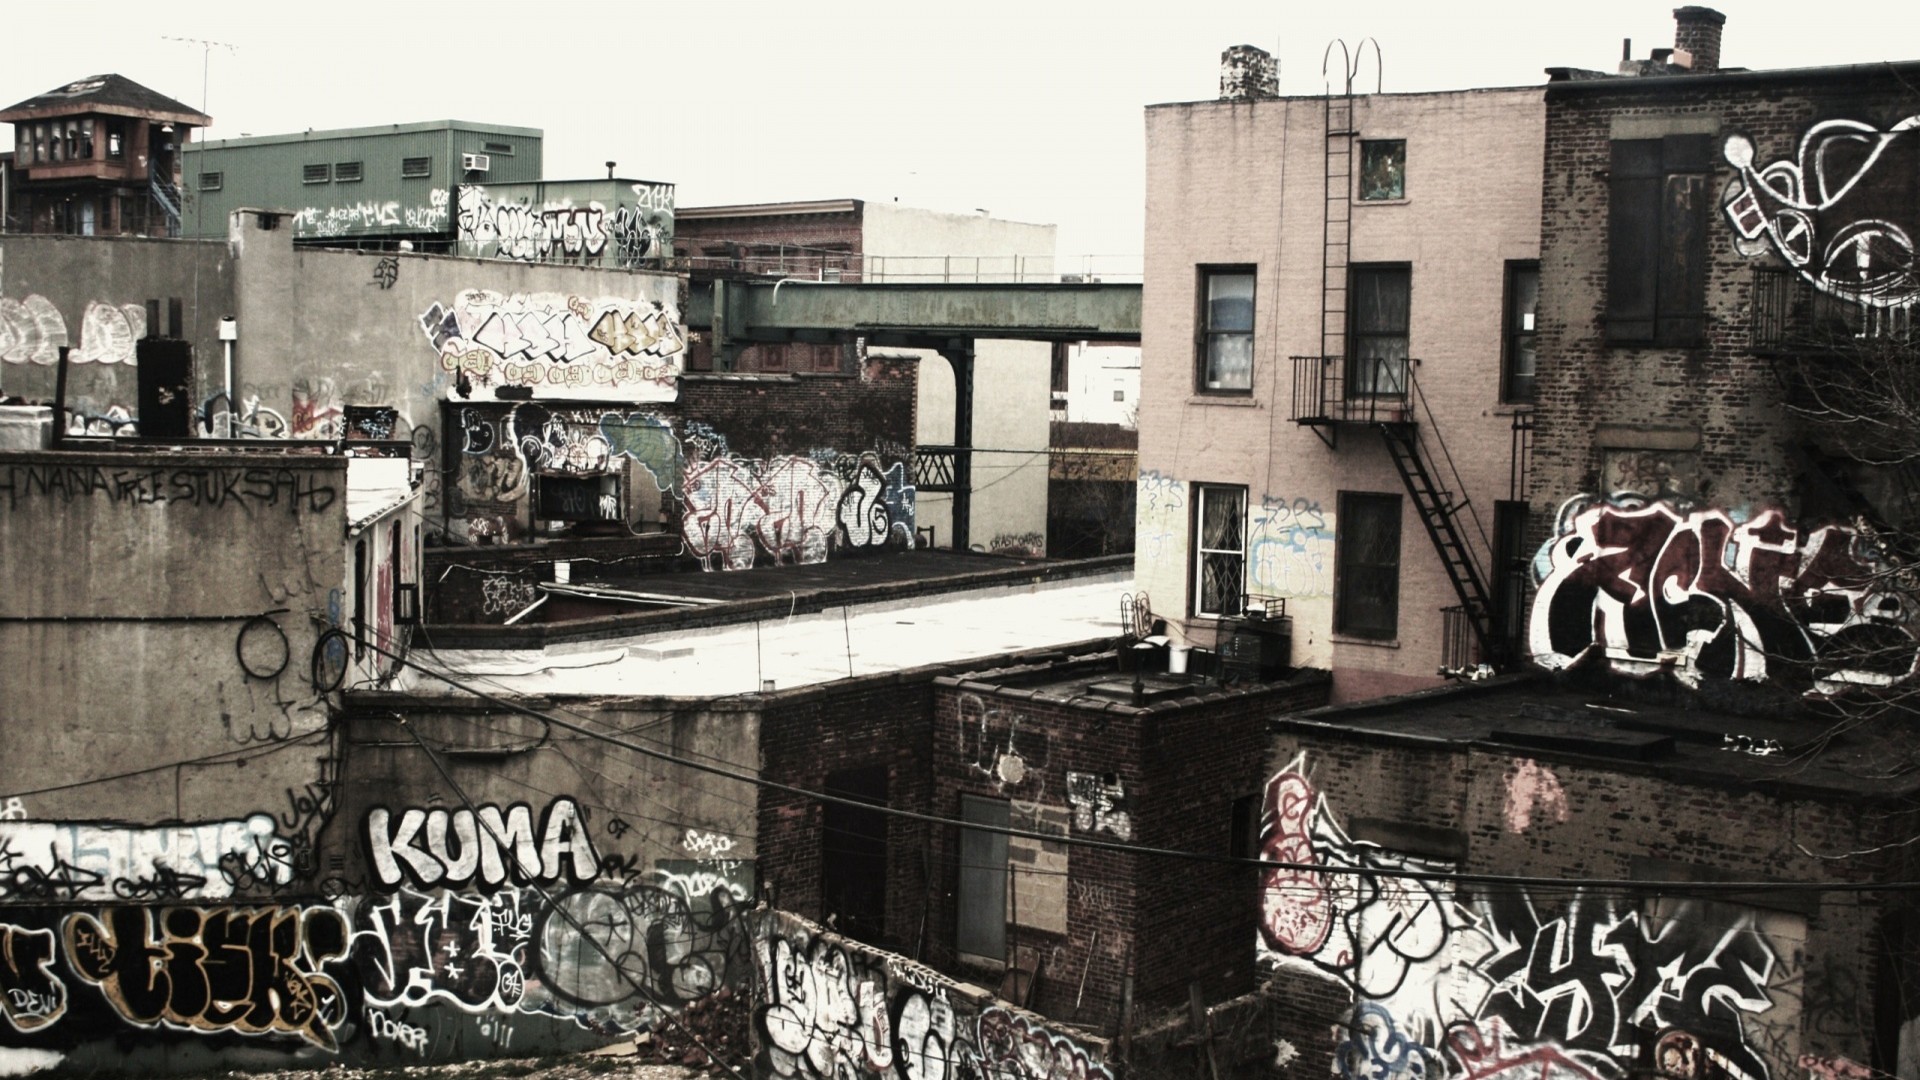 General 1920x1080 ghetto city urban old graffiti